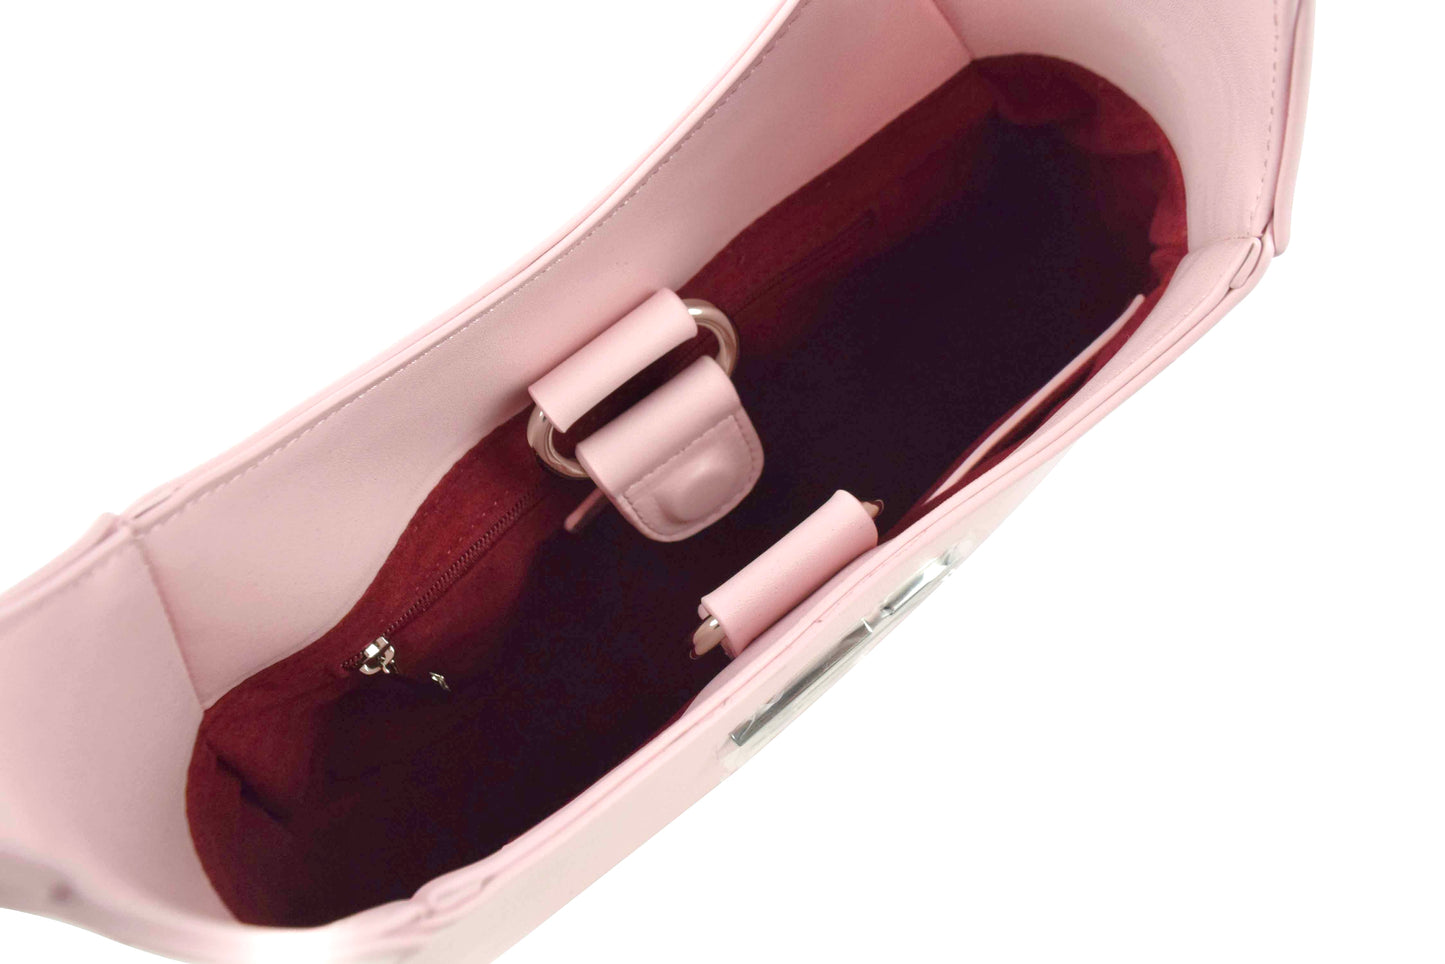 Sophia Vegan Leather Shoulder Bag | Baby Pink